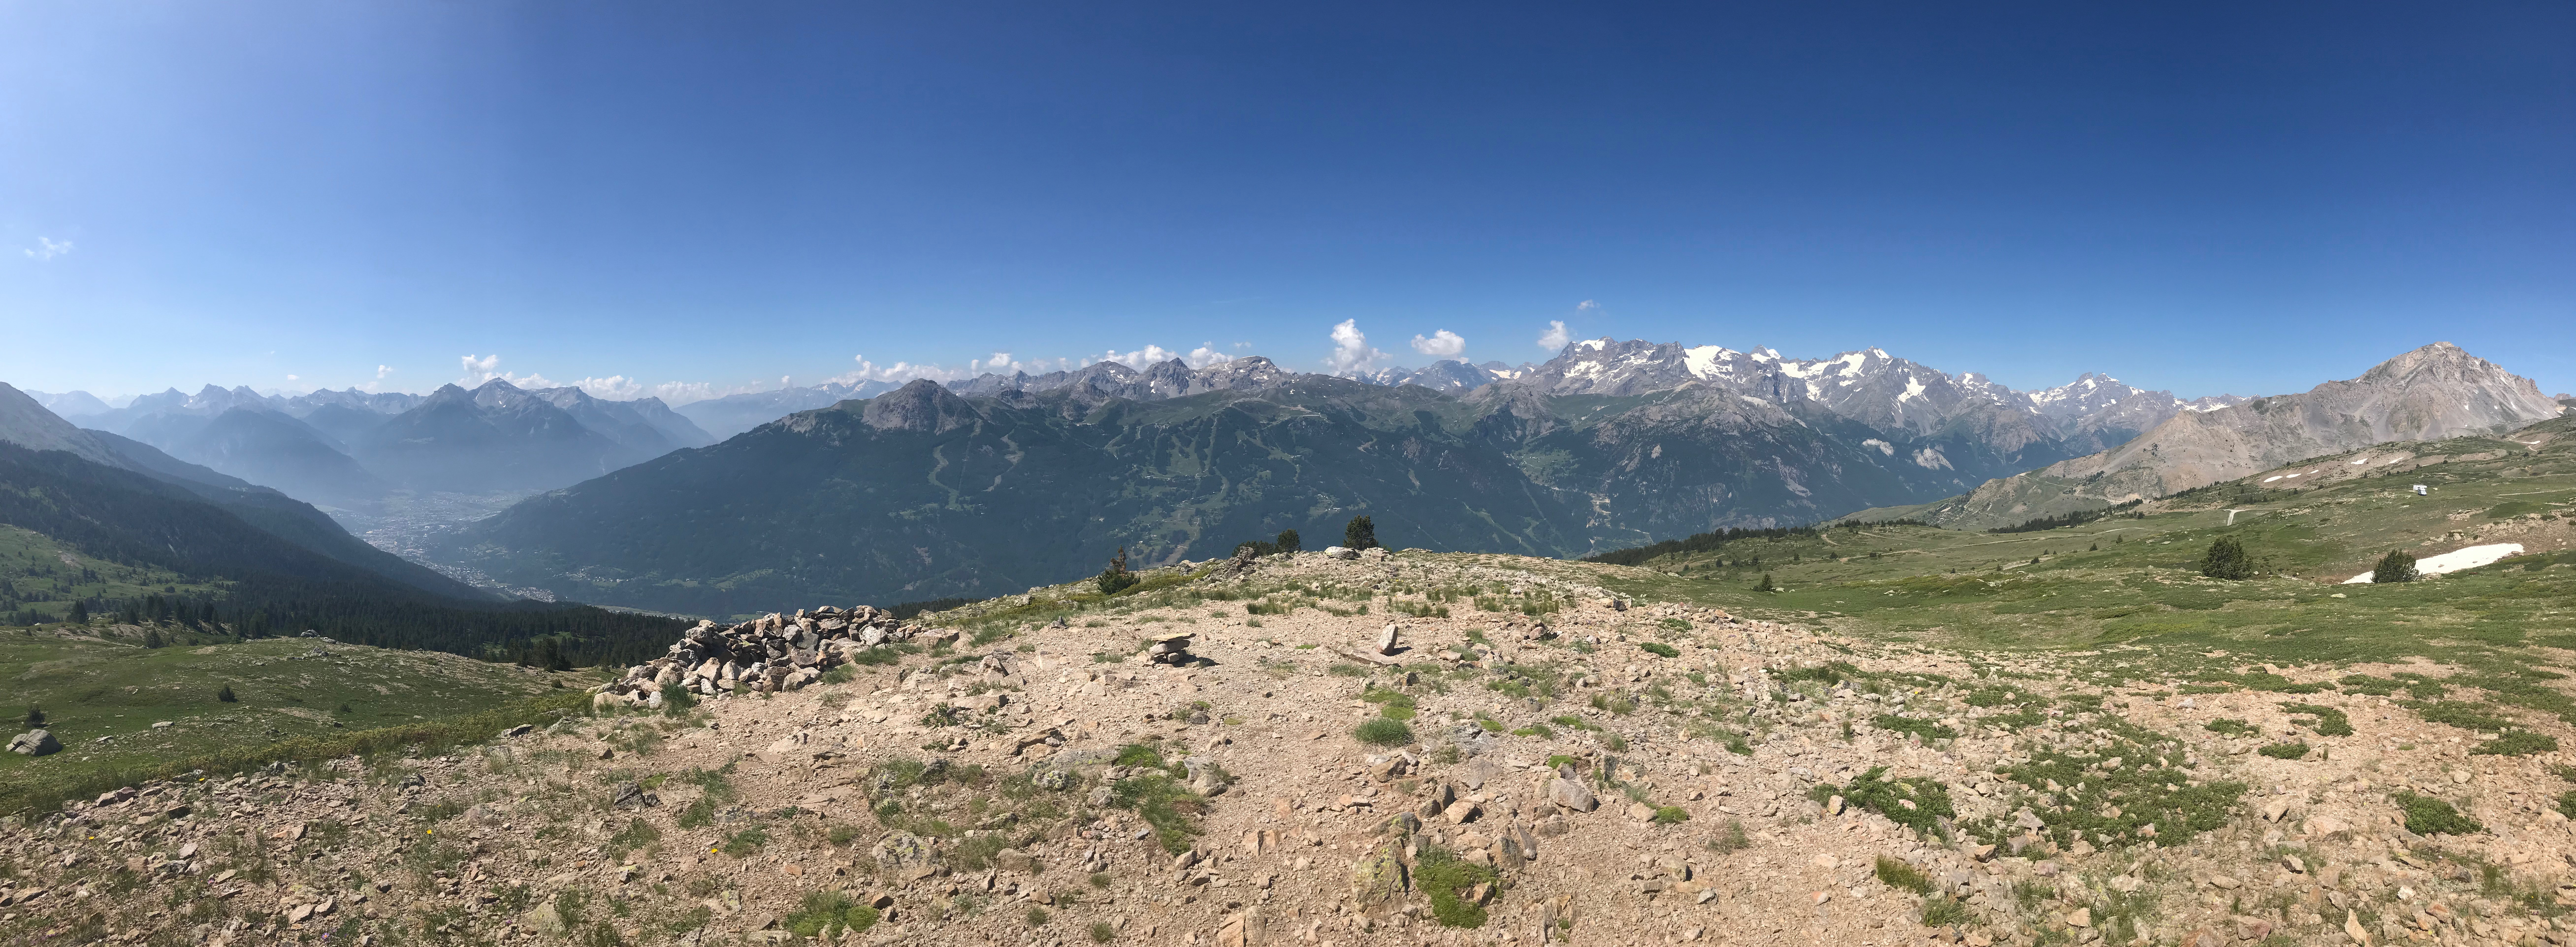 Panoramique au col du Granon, au fond à gauche notre point de départ Briançon, à droite le massif des Écrins.